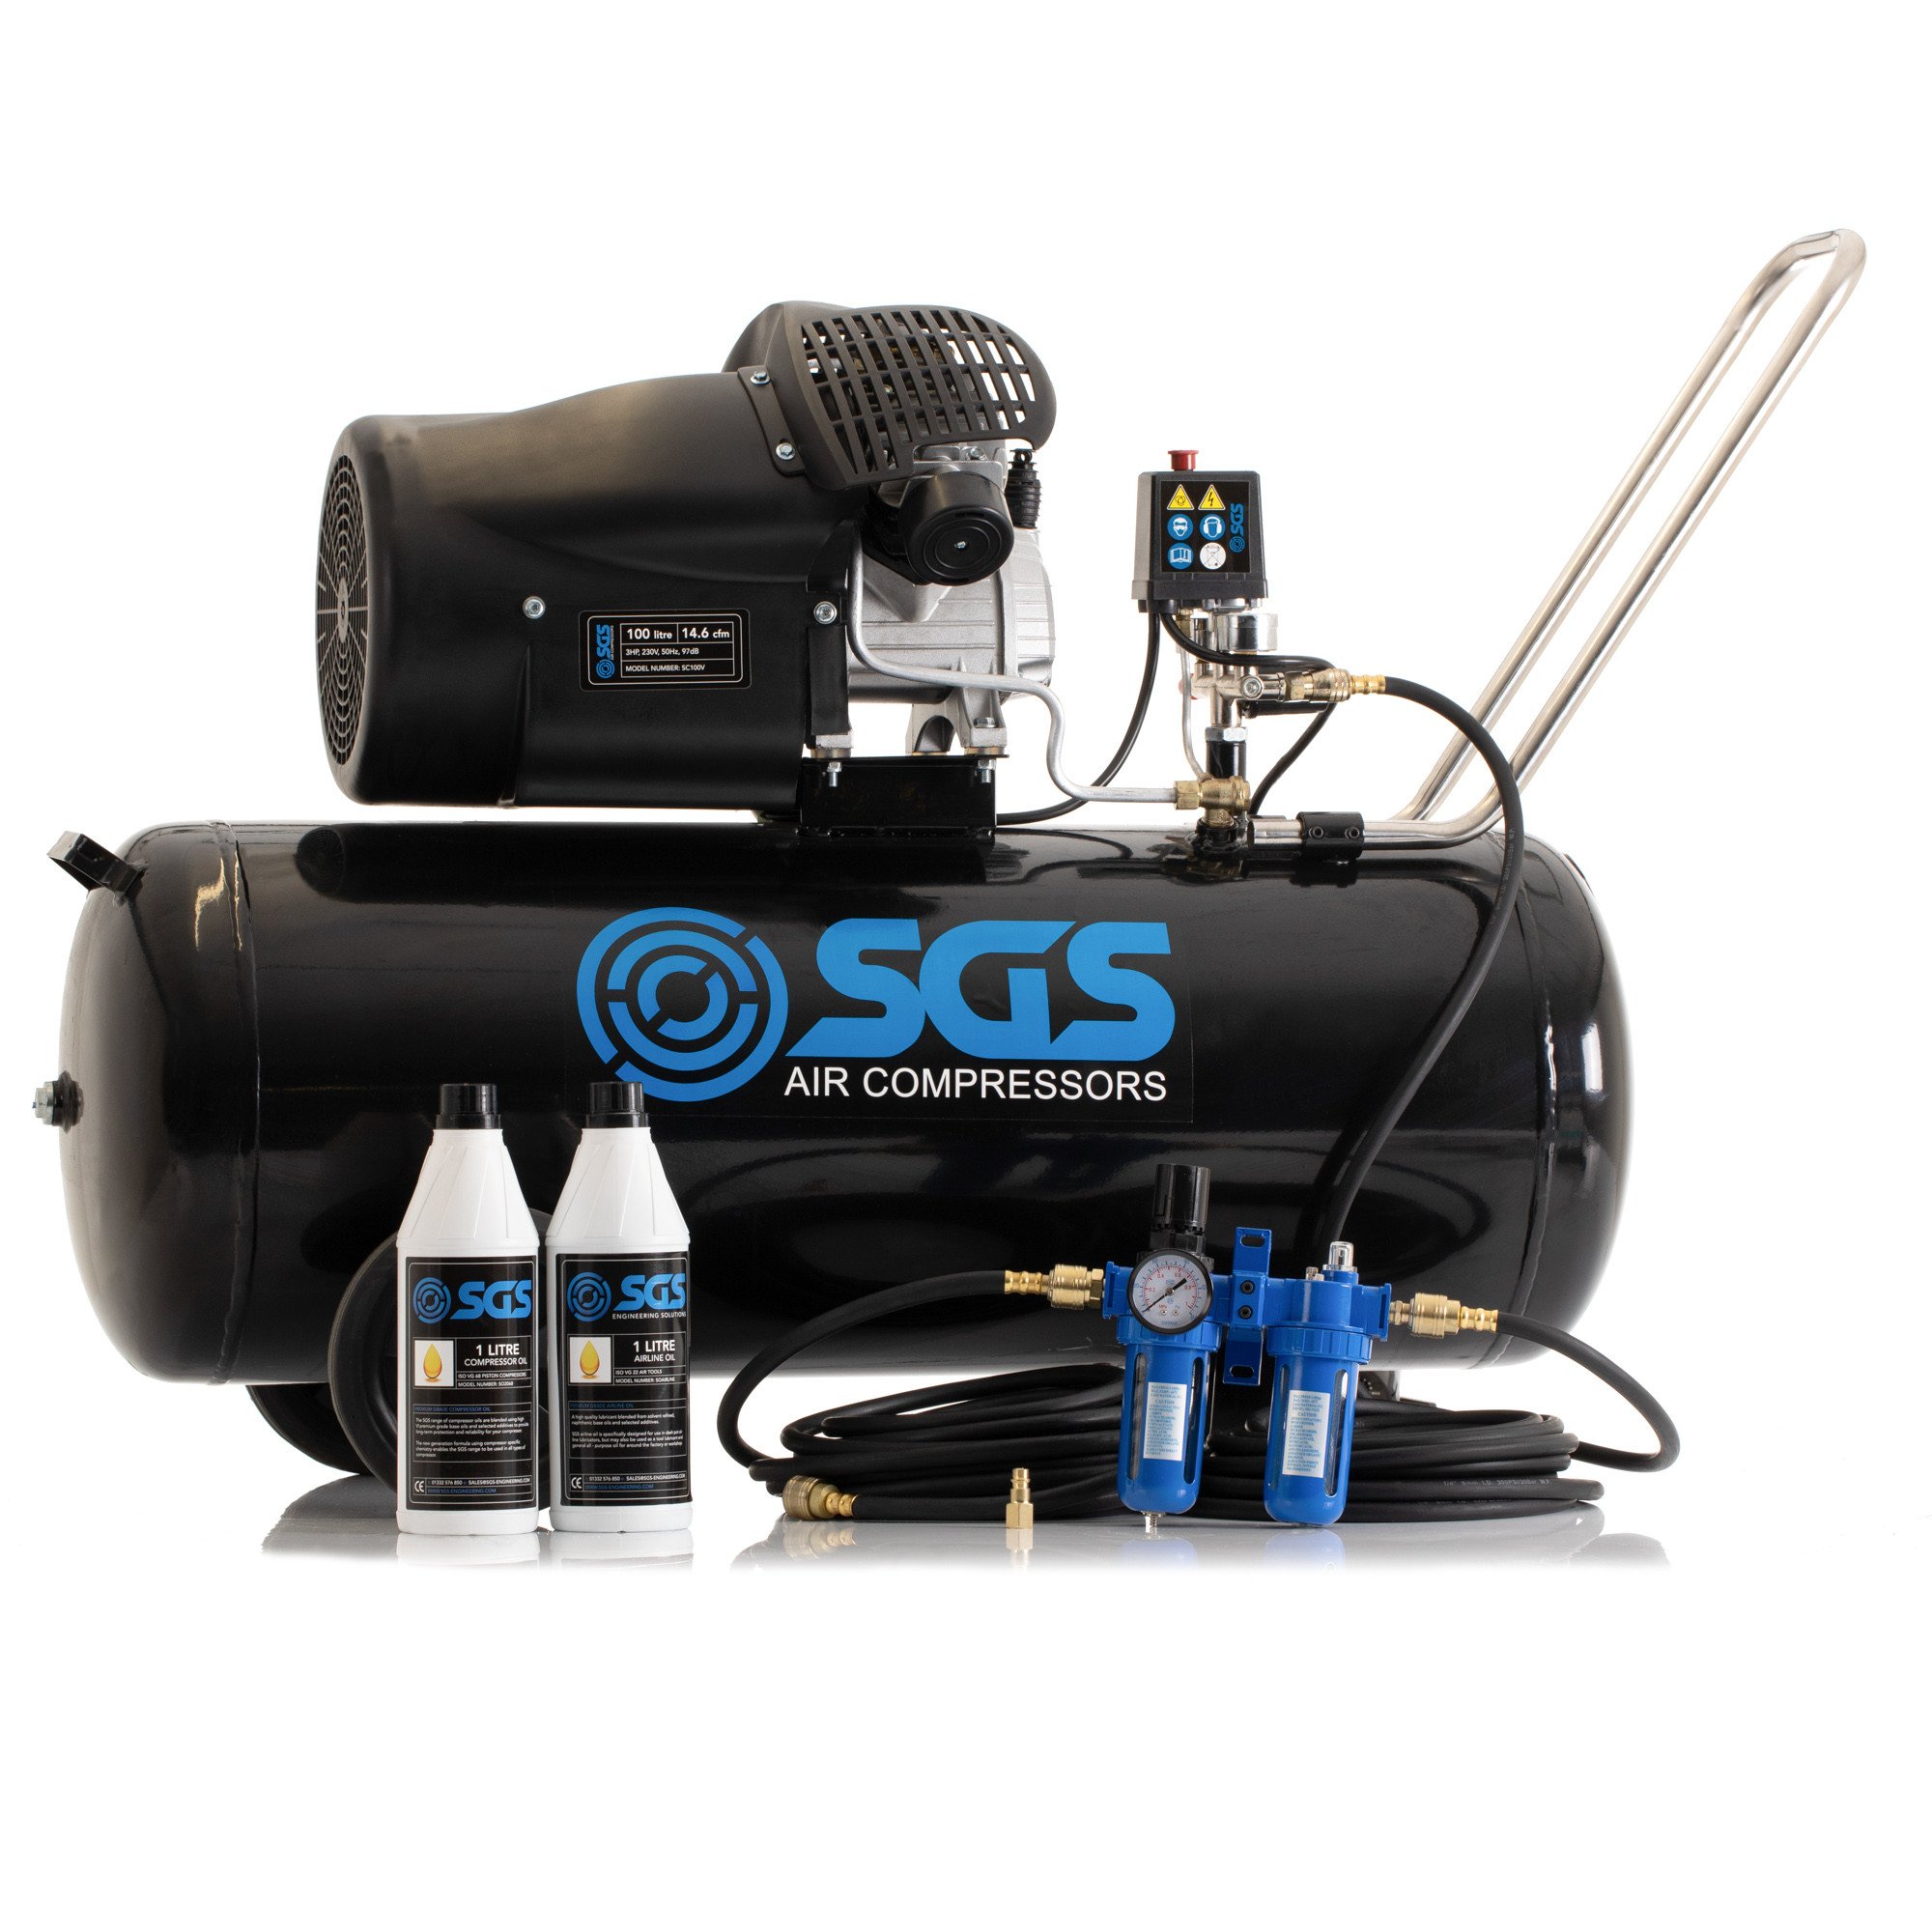 SGS 100升直接驱动空气压缩机和入门套件-14.6CFM 3.0HP 100L